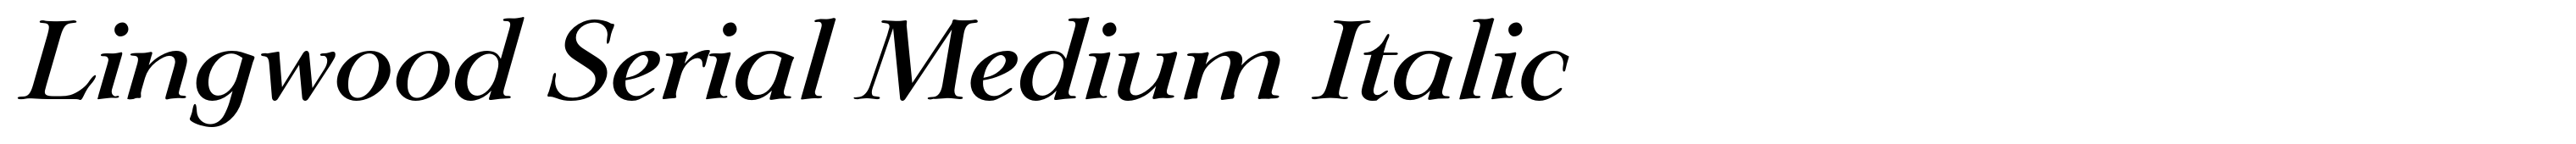 Lingwood Serial Medium Italic